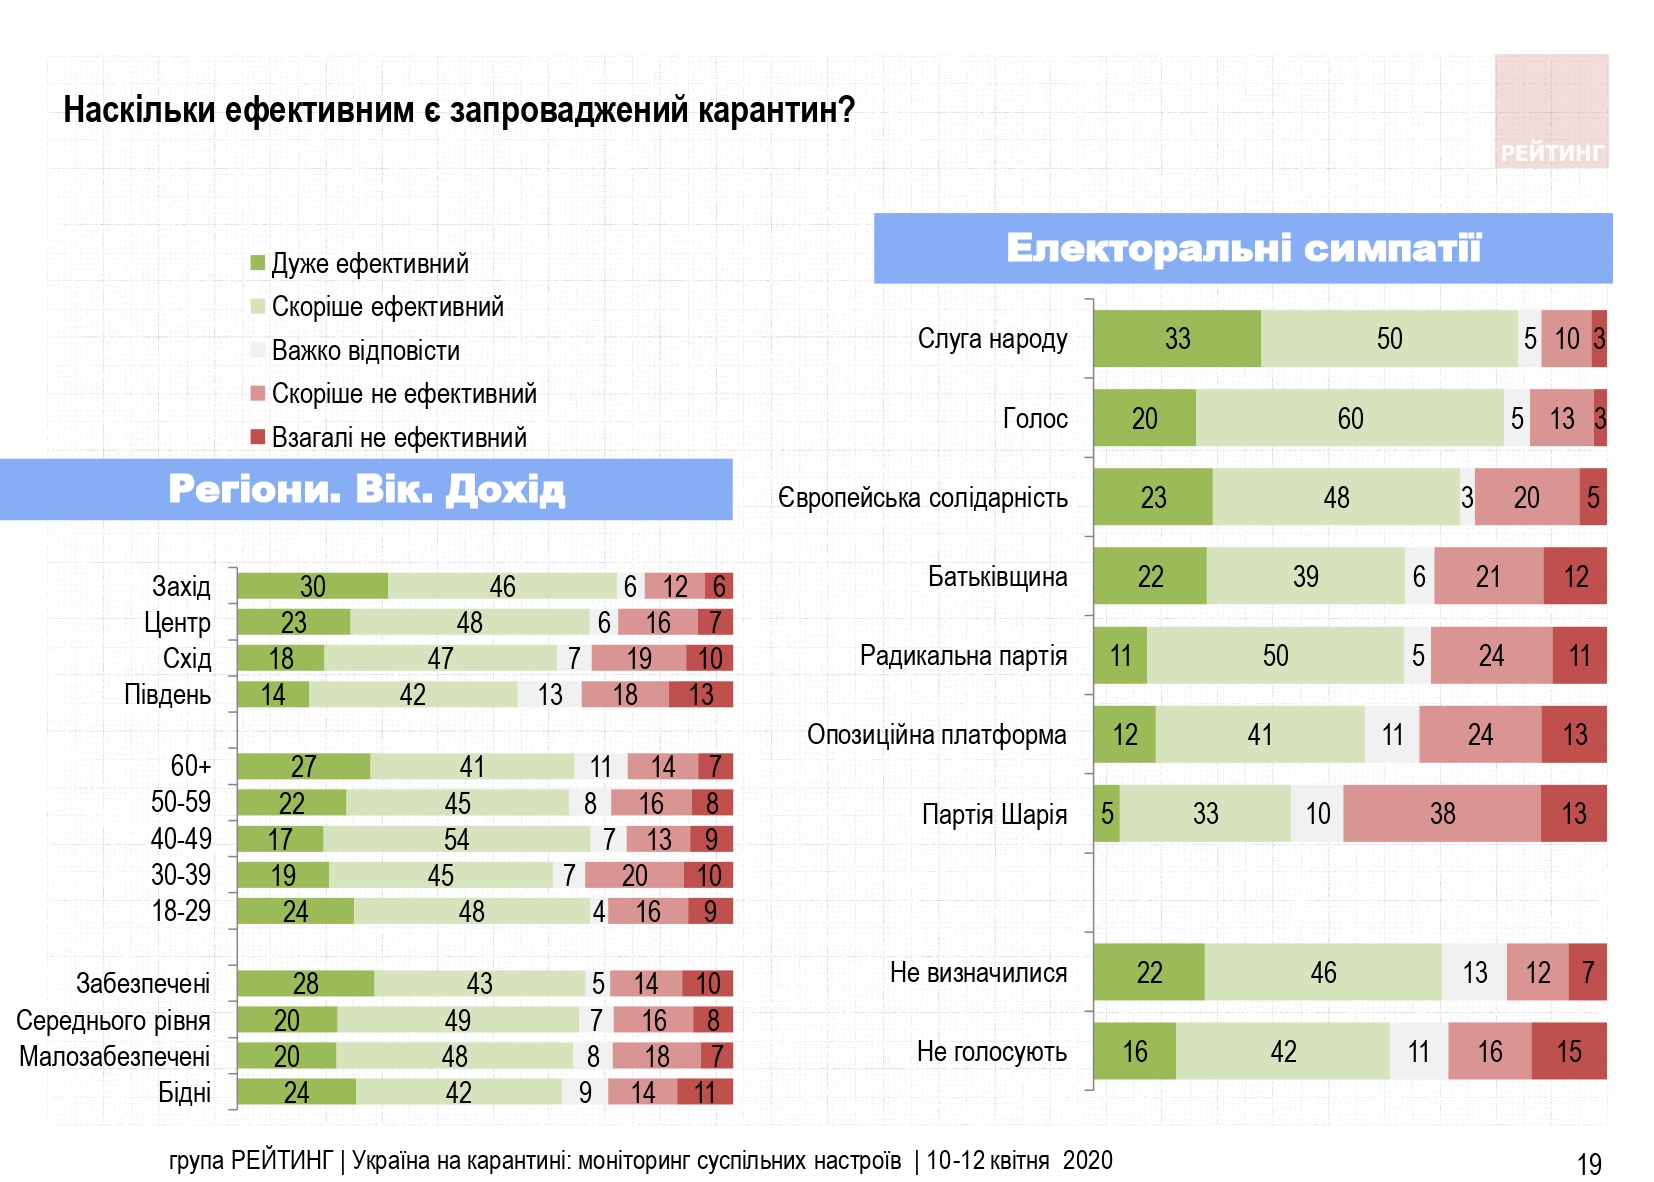 Коронавирус в Украине: половина населения считает карантин мягким